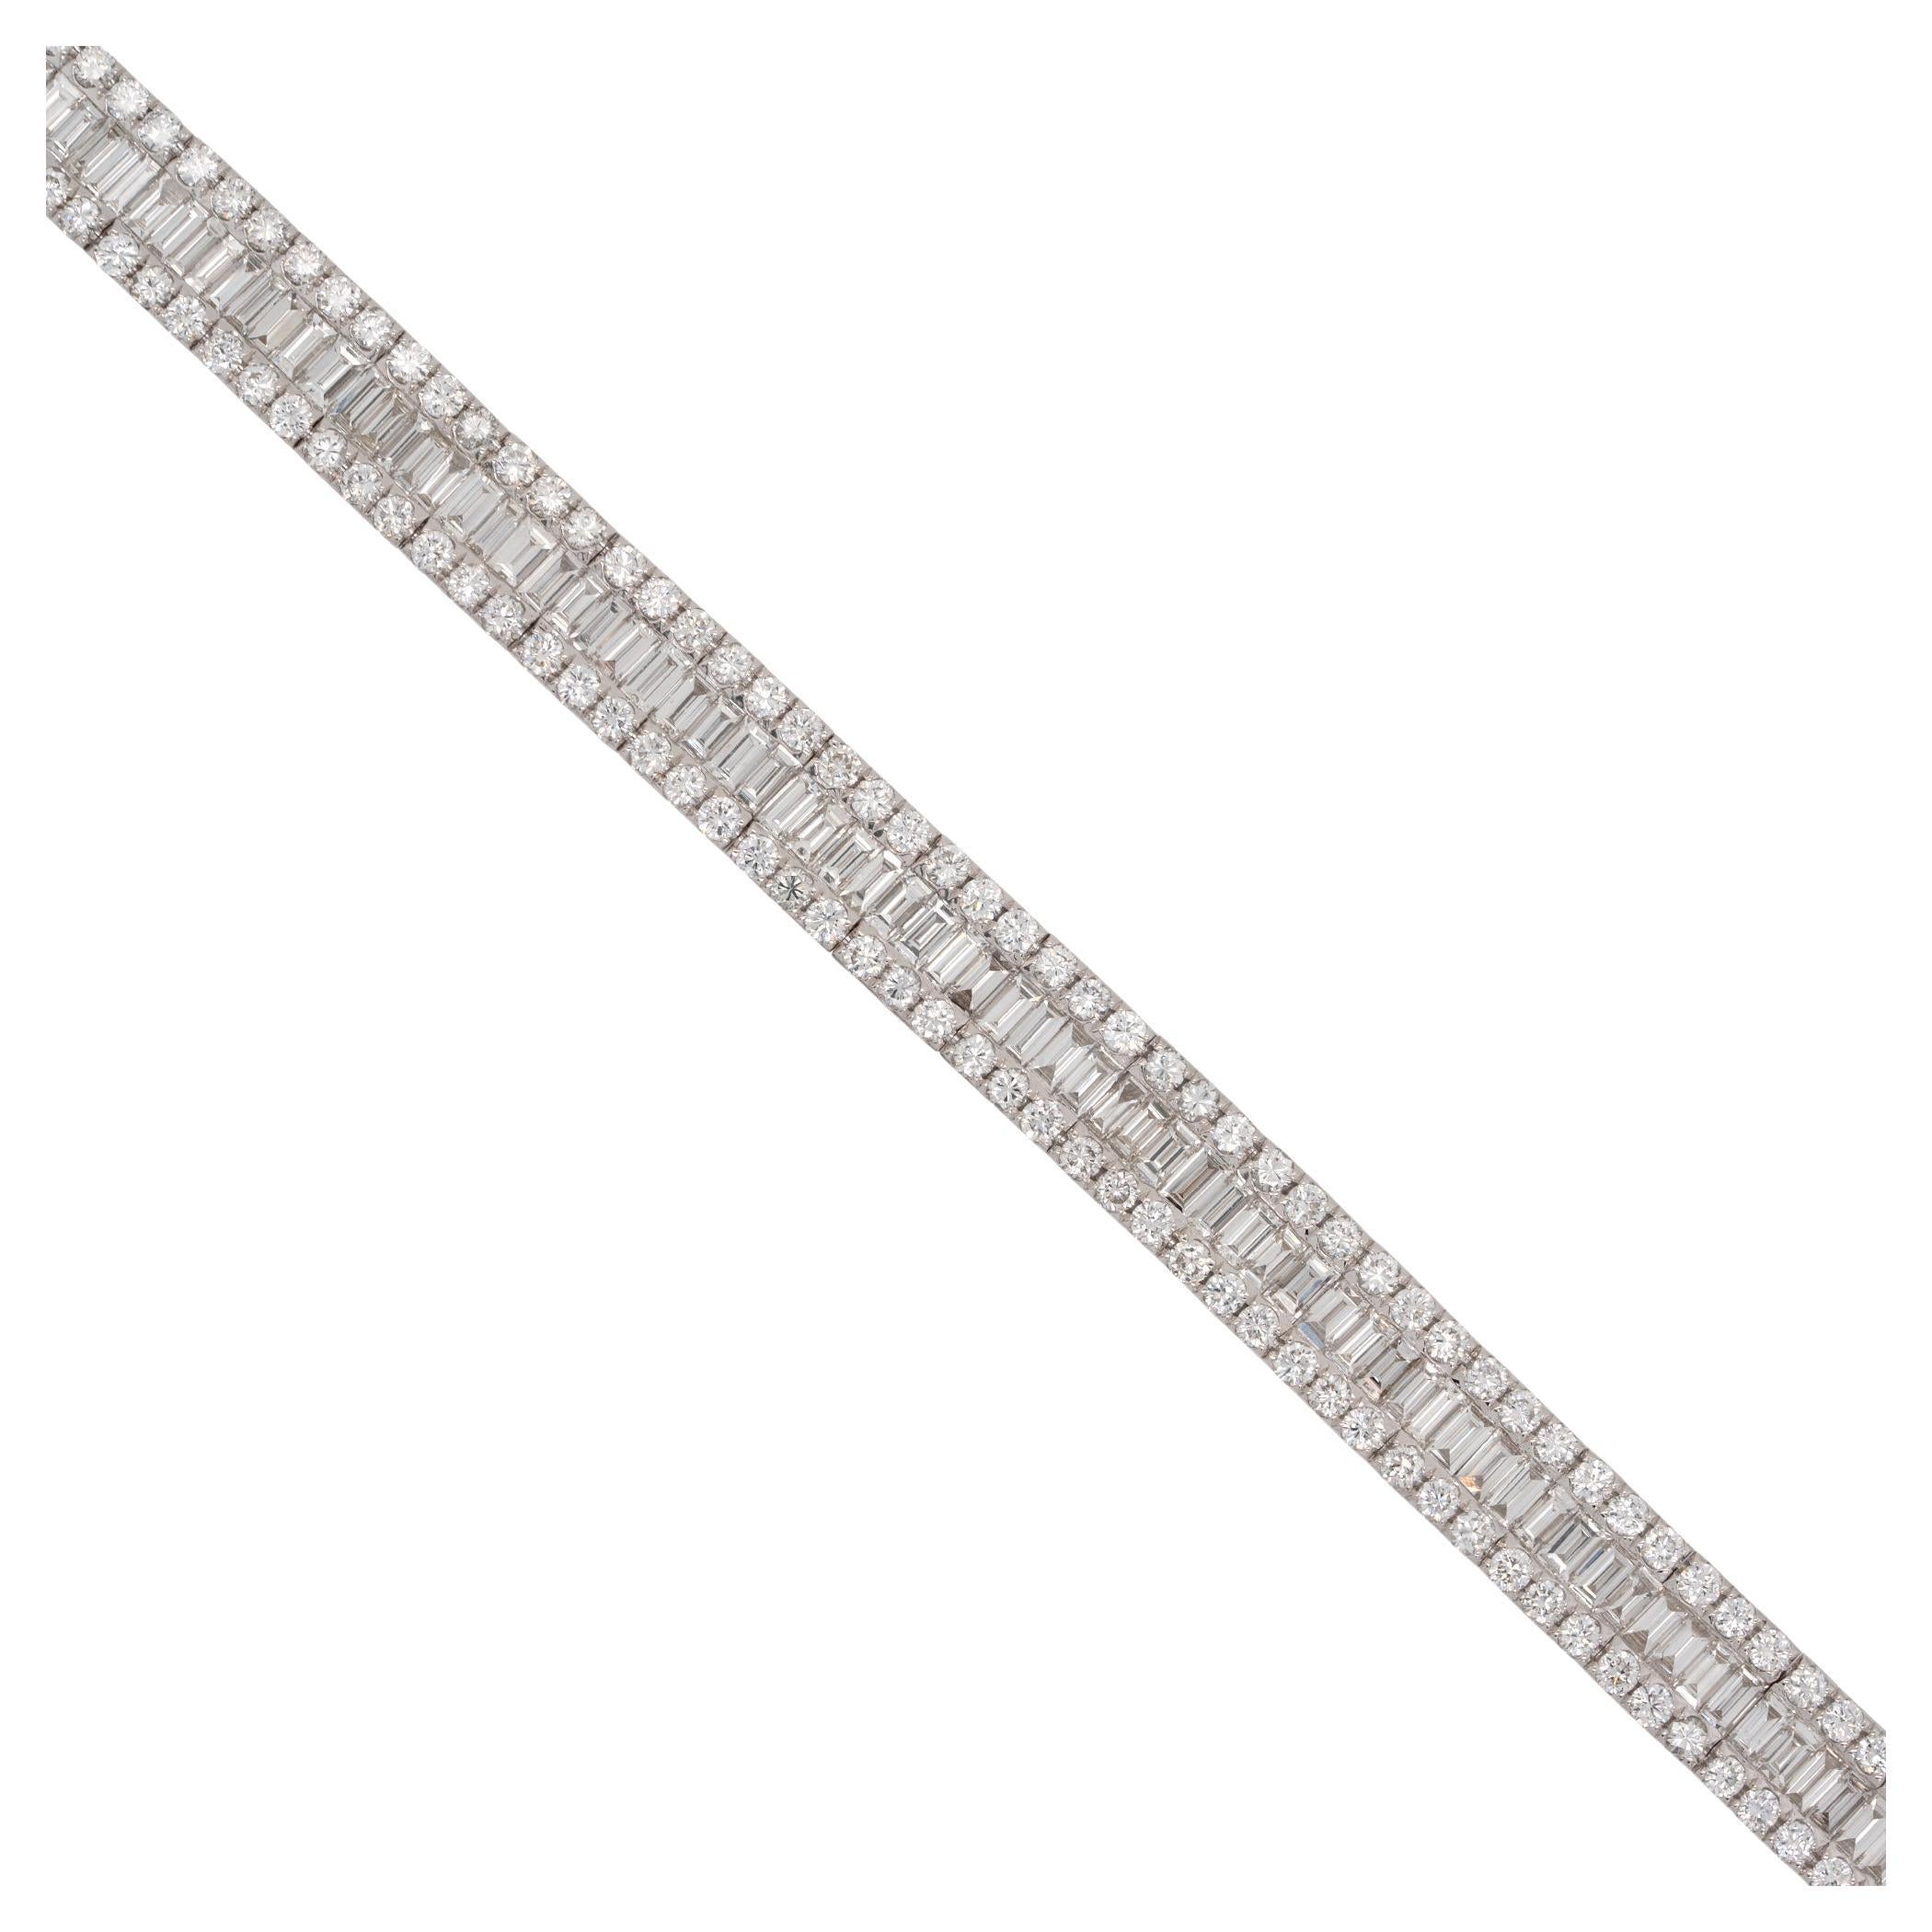 7.14 Carat Diamond Bracelet 18 Karat in Stock